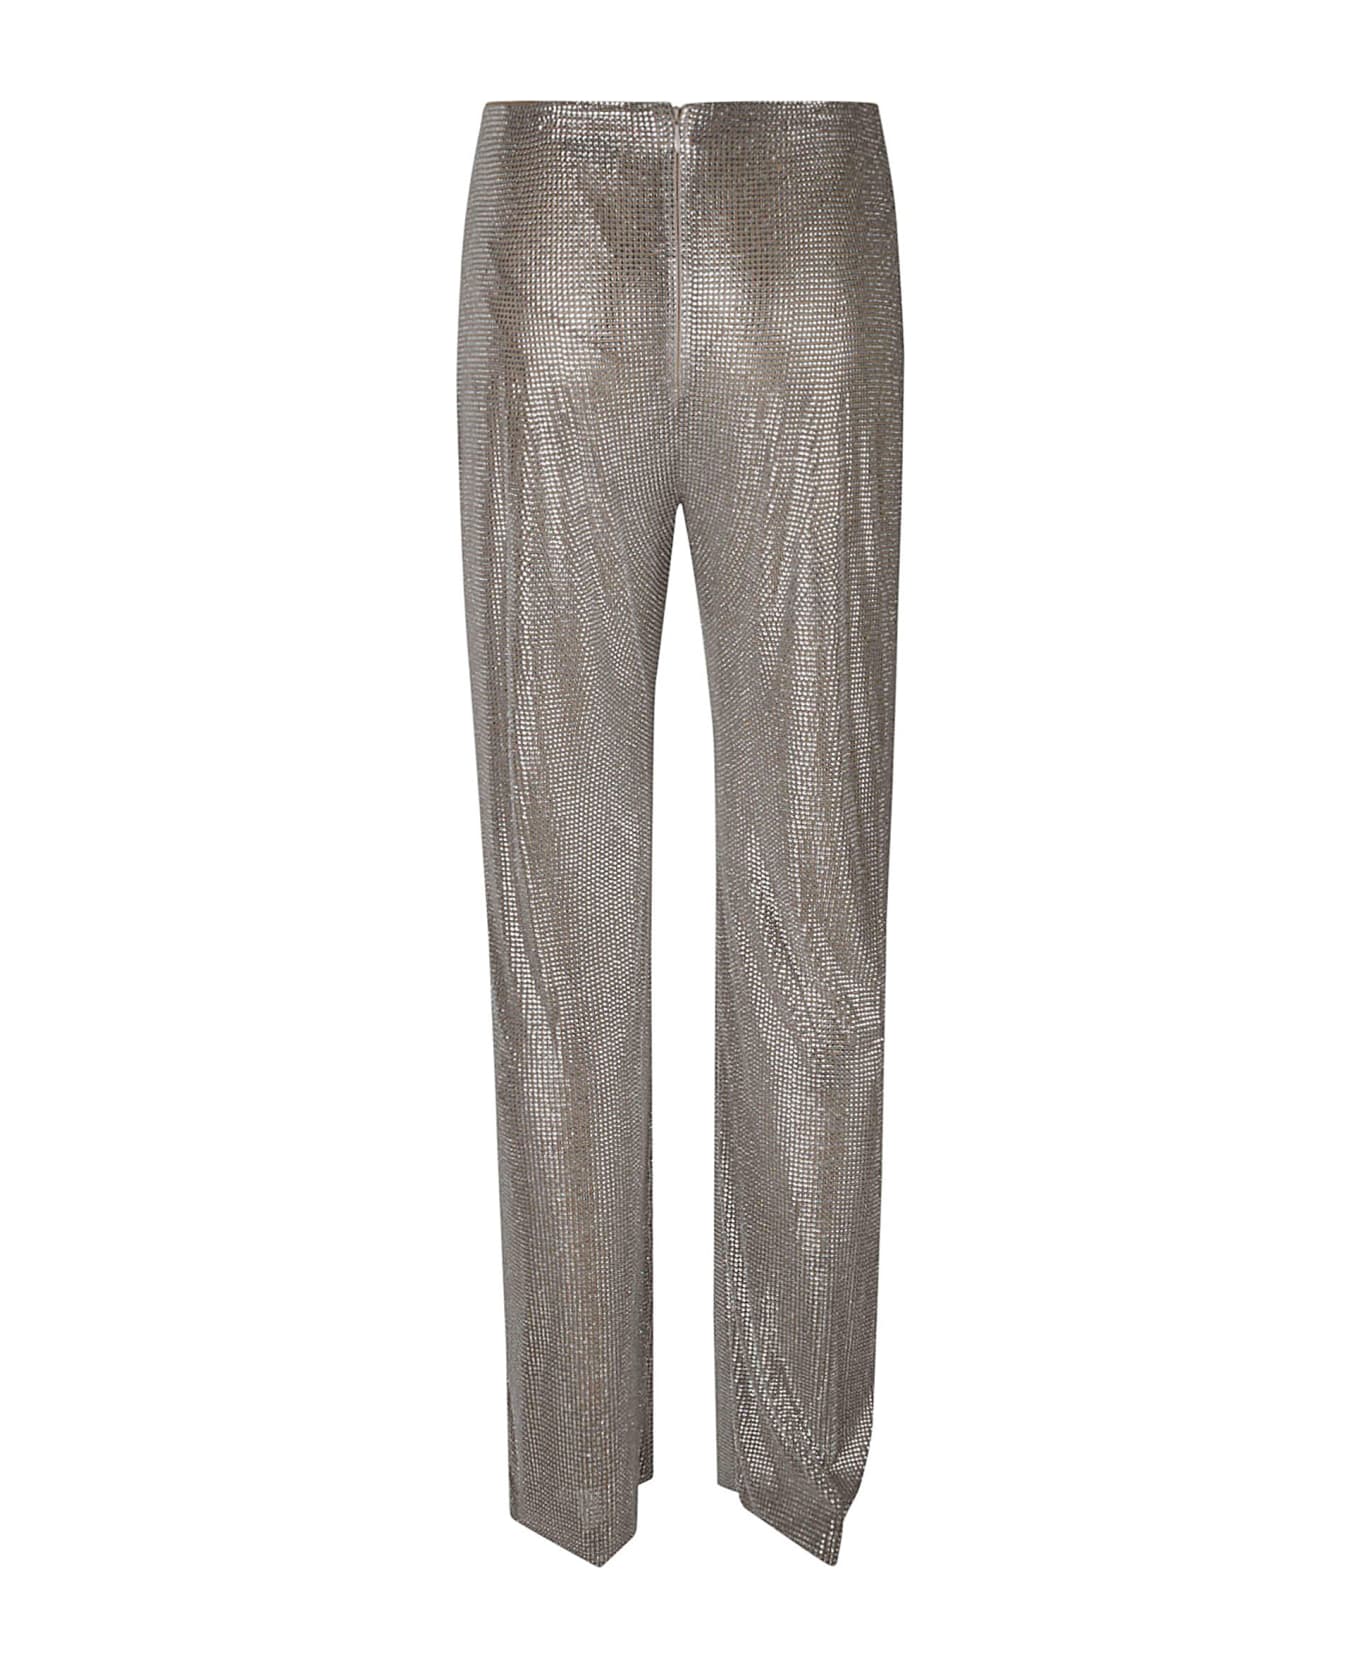 Giuseppe di Morabito Rhinestone Embellished Trousers - Beige+Crystal ボトムス